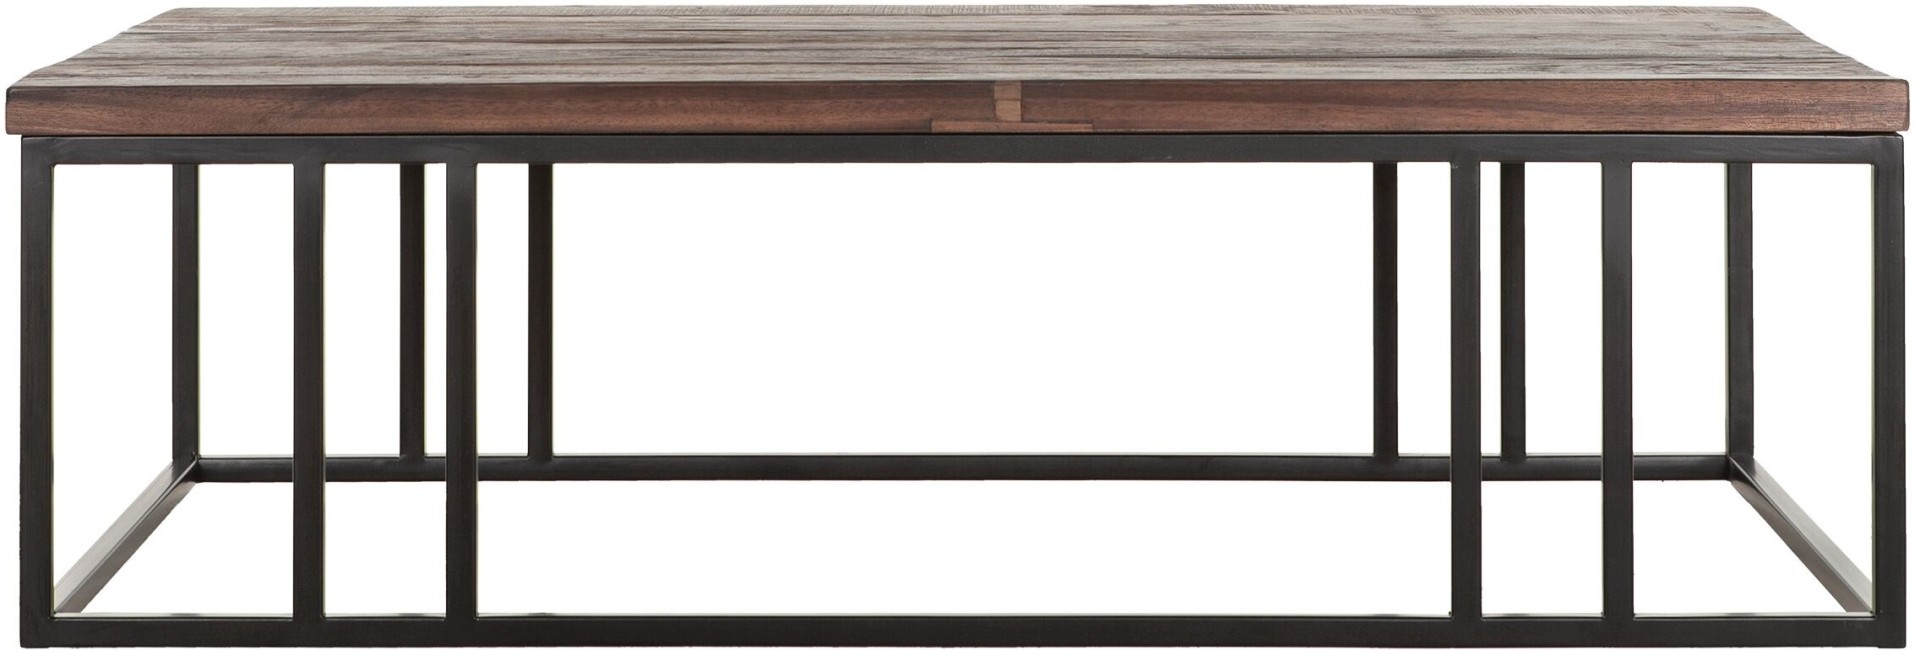 Der Couchtisch Timber wurde aus verschiedenen Holzarten gefertigt. Das Gestell ist aus Metall uns ist Schwarz.Der Tisch überzeugt mit seinem massivem aber auch modernen Design. Der Couchtisch verfügt über eine Länge von 120 cm.